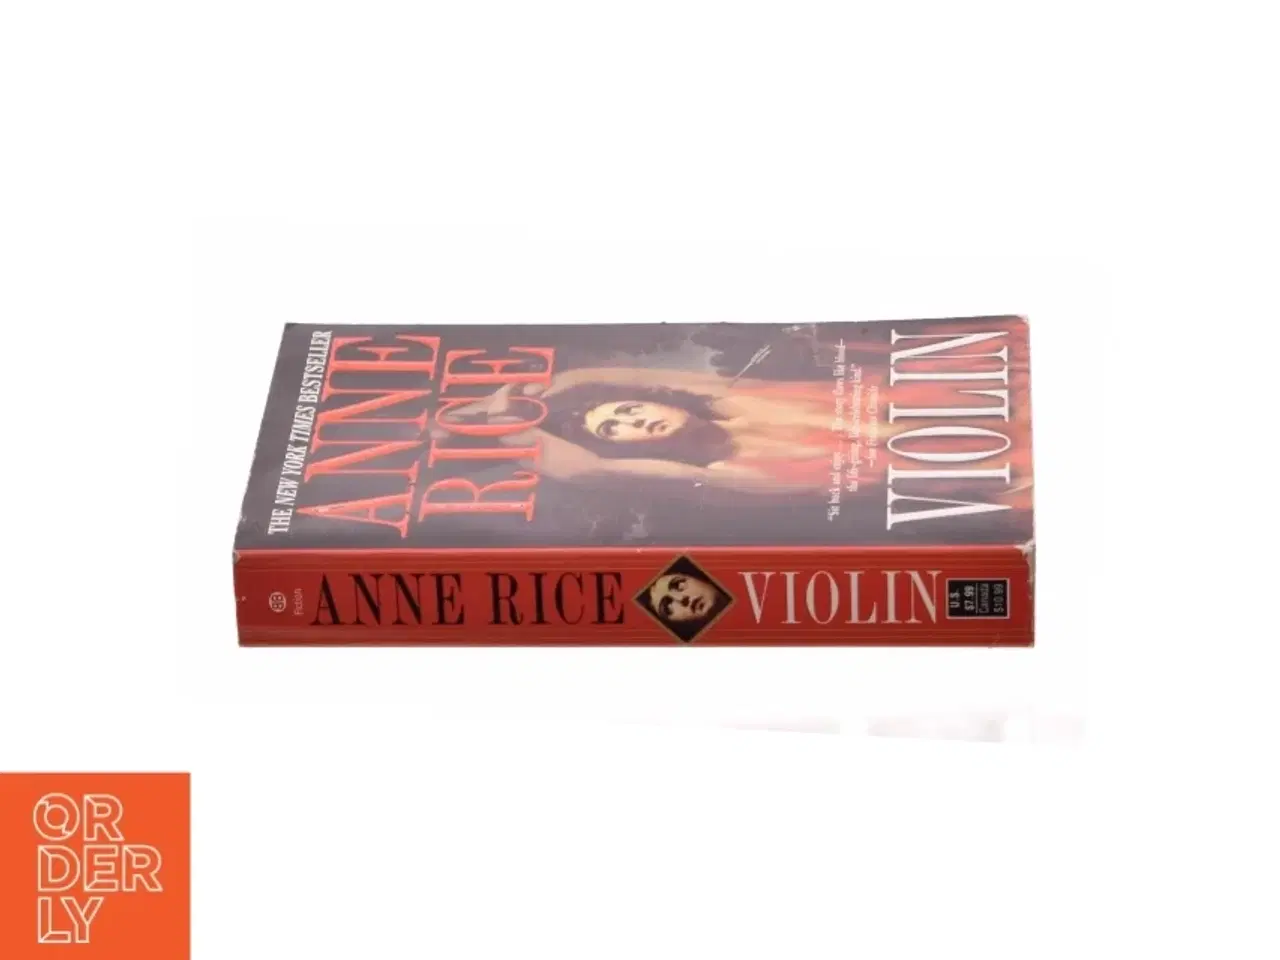 Billede 3 - Violin af Anne Rice (bog)